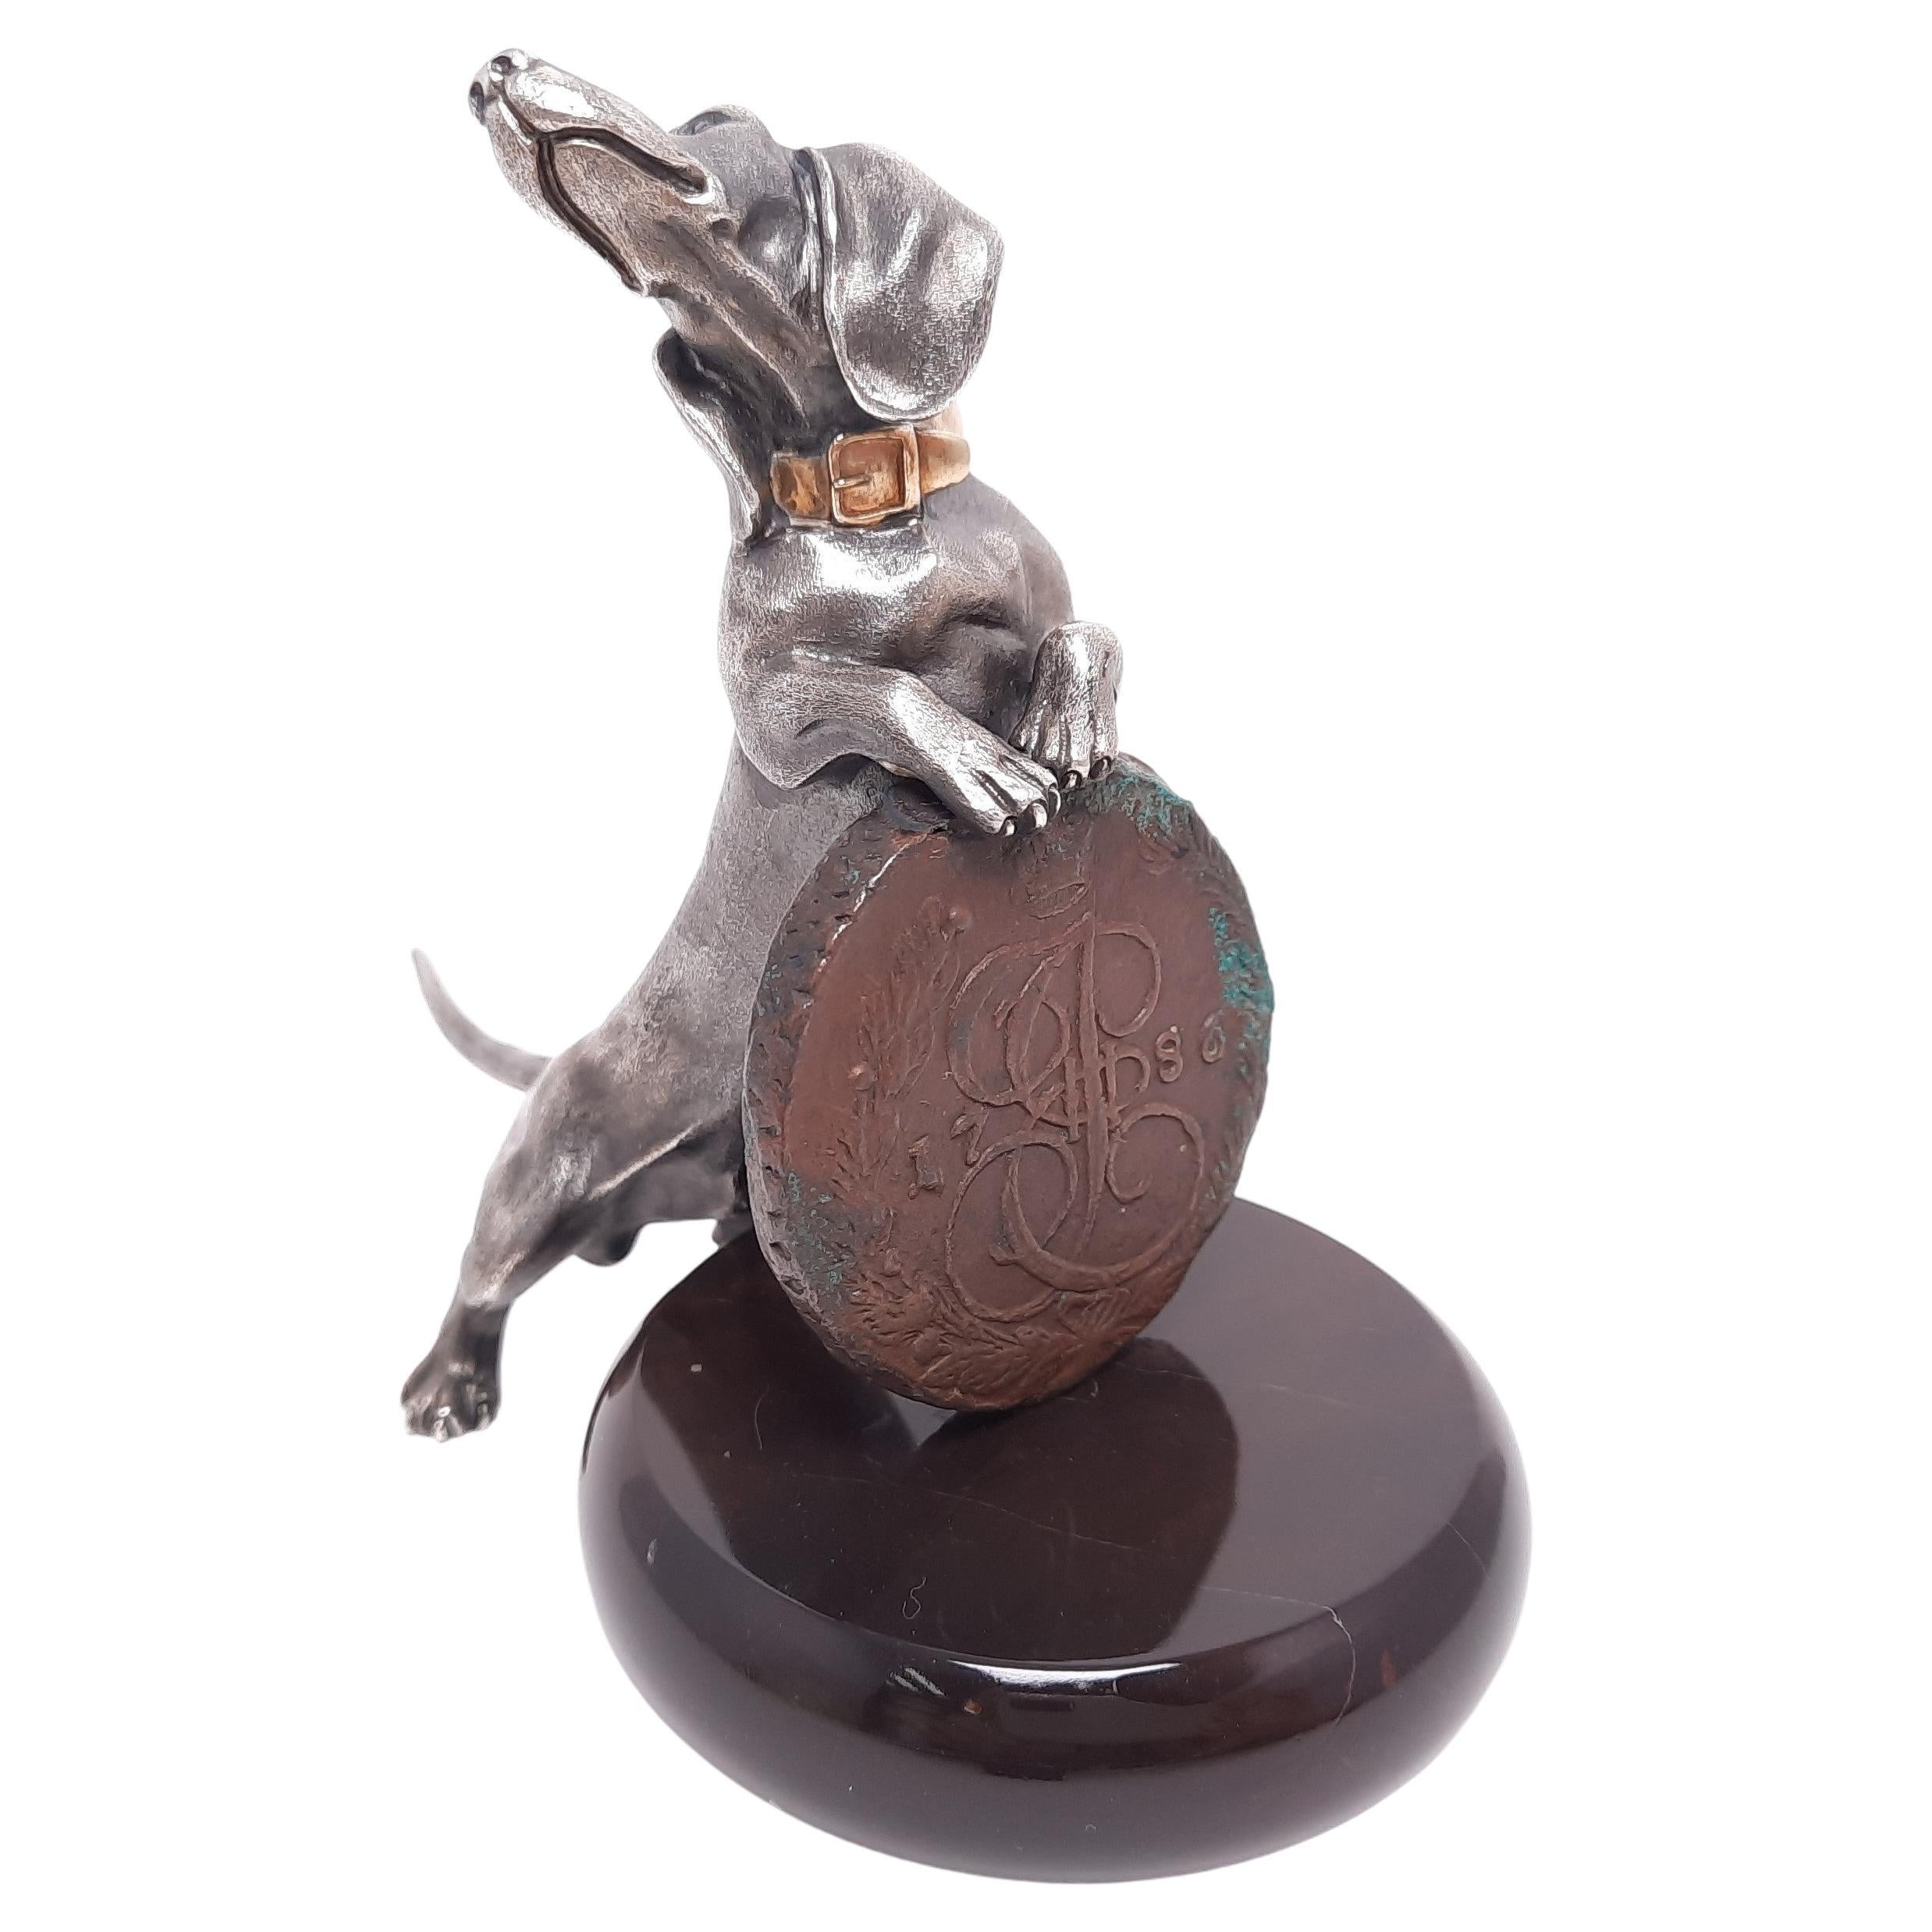 Talisman miniature de chien authentique Dachshund en métal argenté et or avec un vieil russe